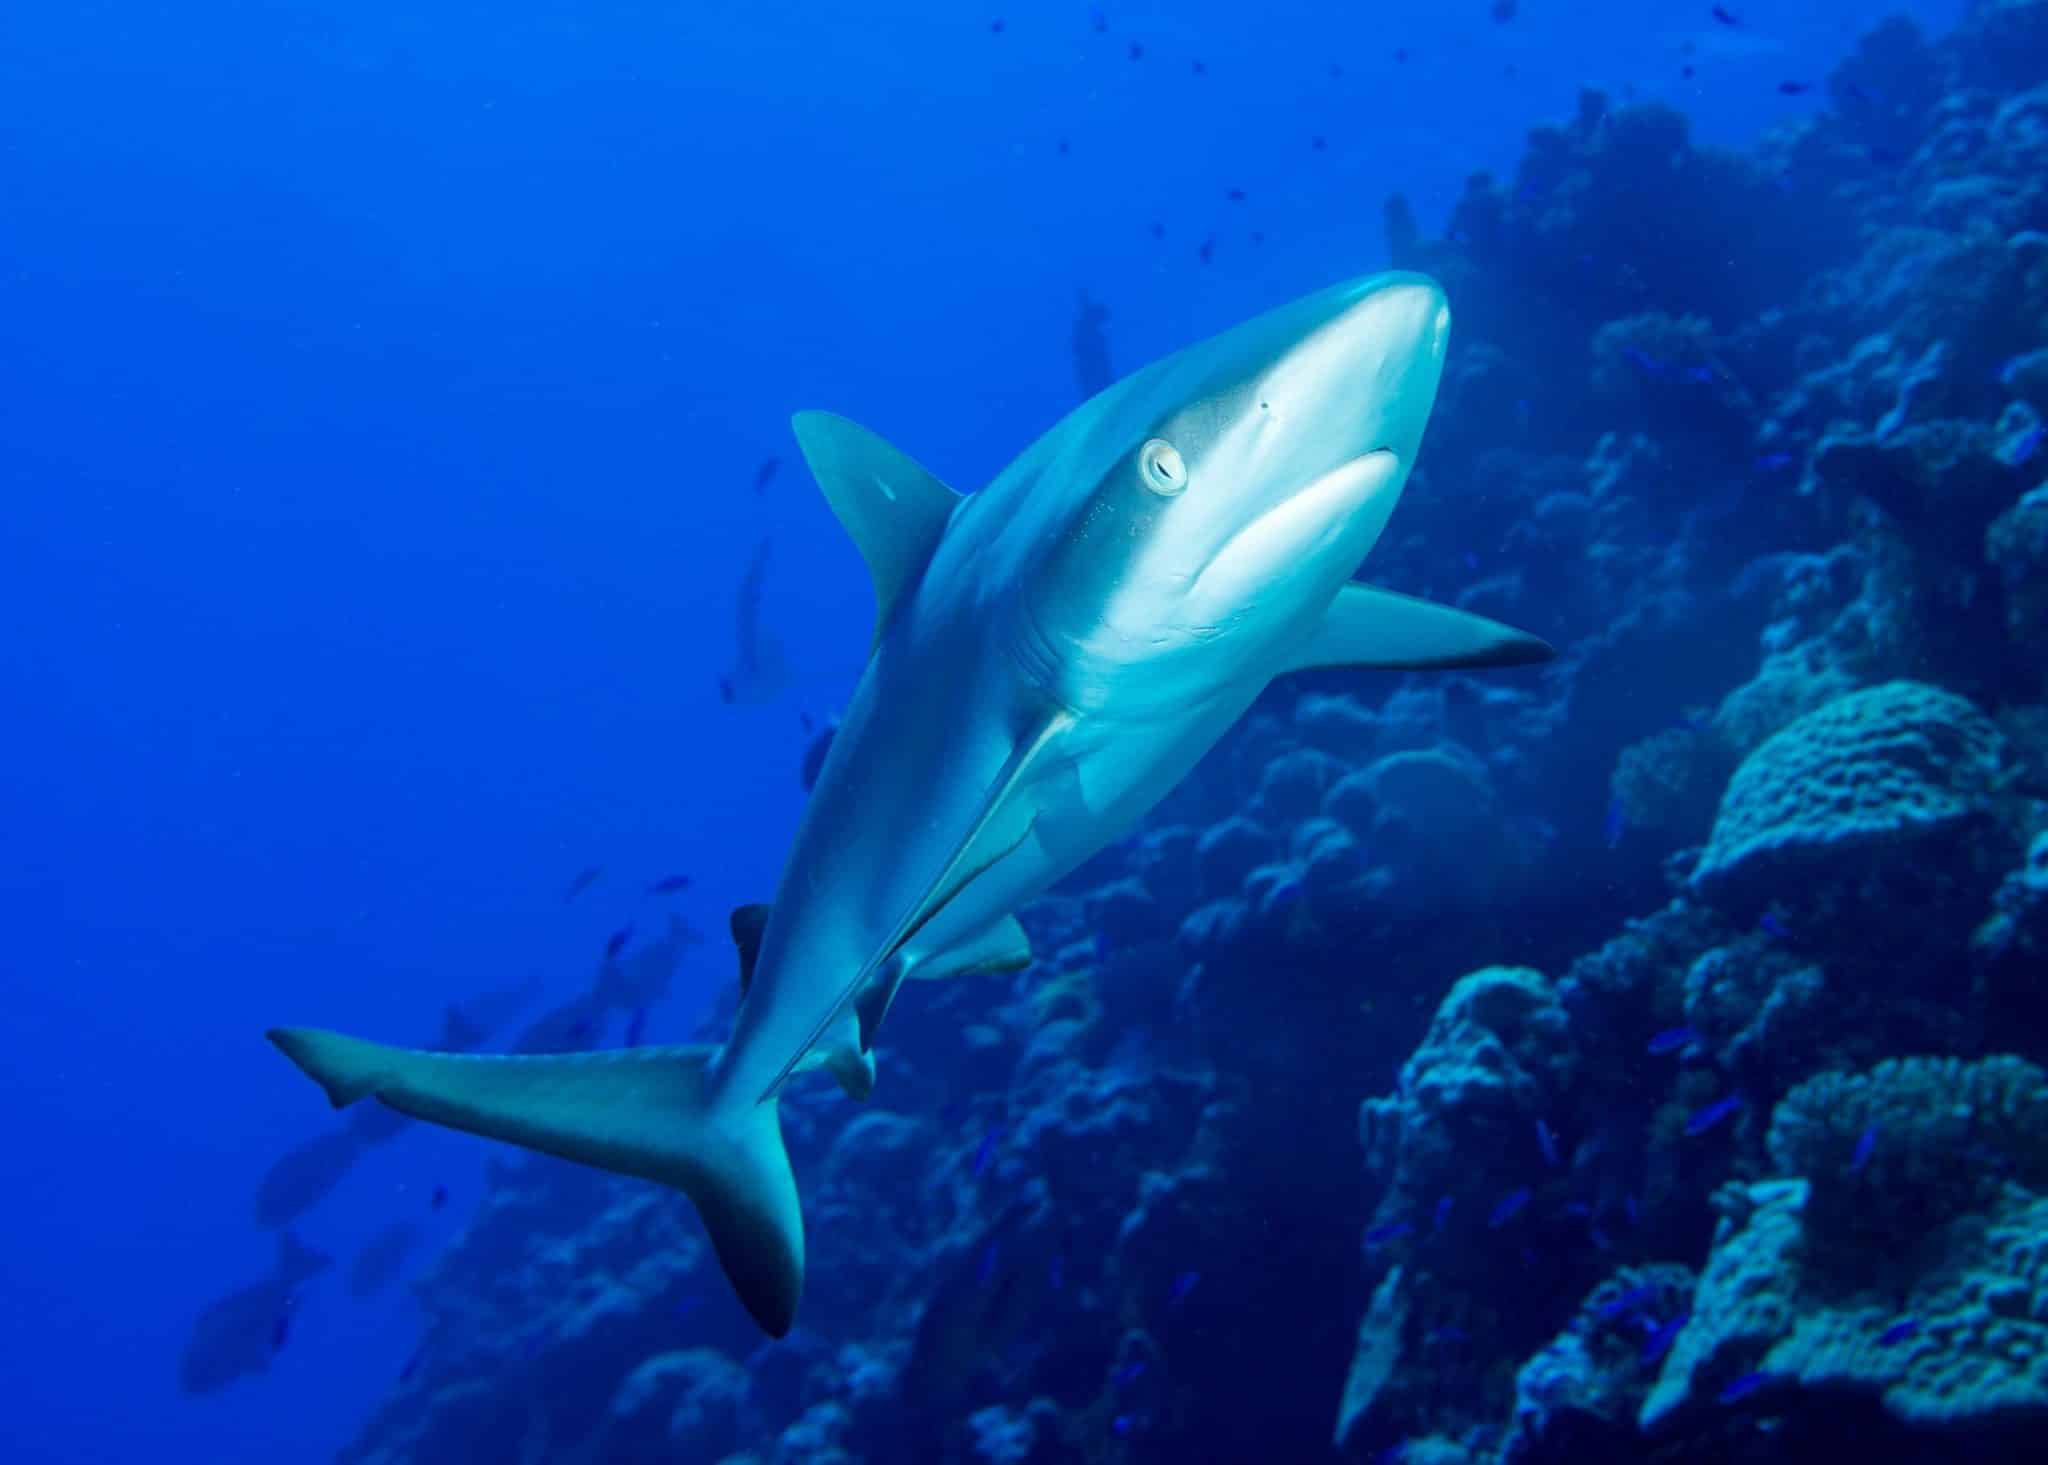 Hai-Arten auf Mauritius – gefährlich für Urlauber beim Schwimmen?